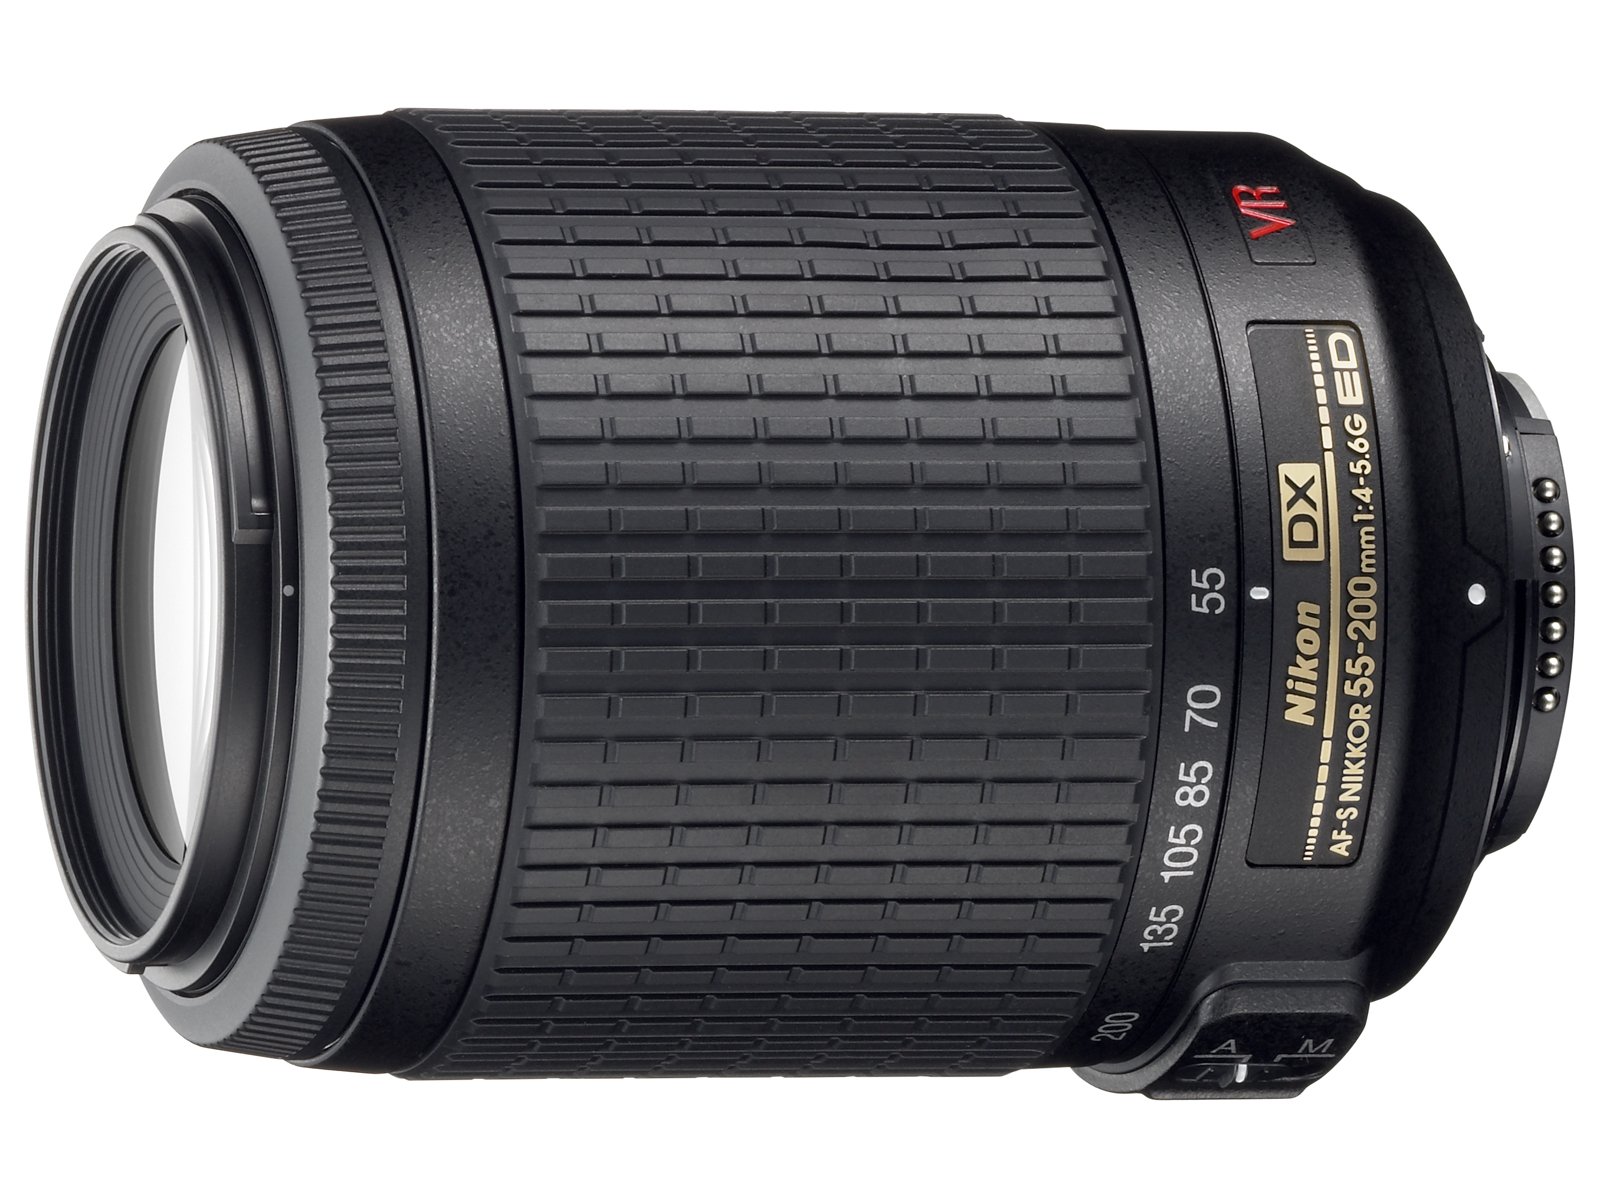 Nikon AF-S DX Nikkor 55-200mm f/4-5.6 G ED VR Autofocus APS-C Lens, Black {52} - image 1 of 3